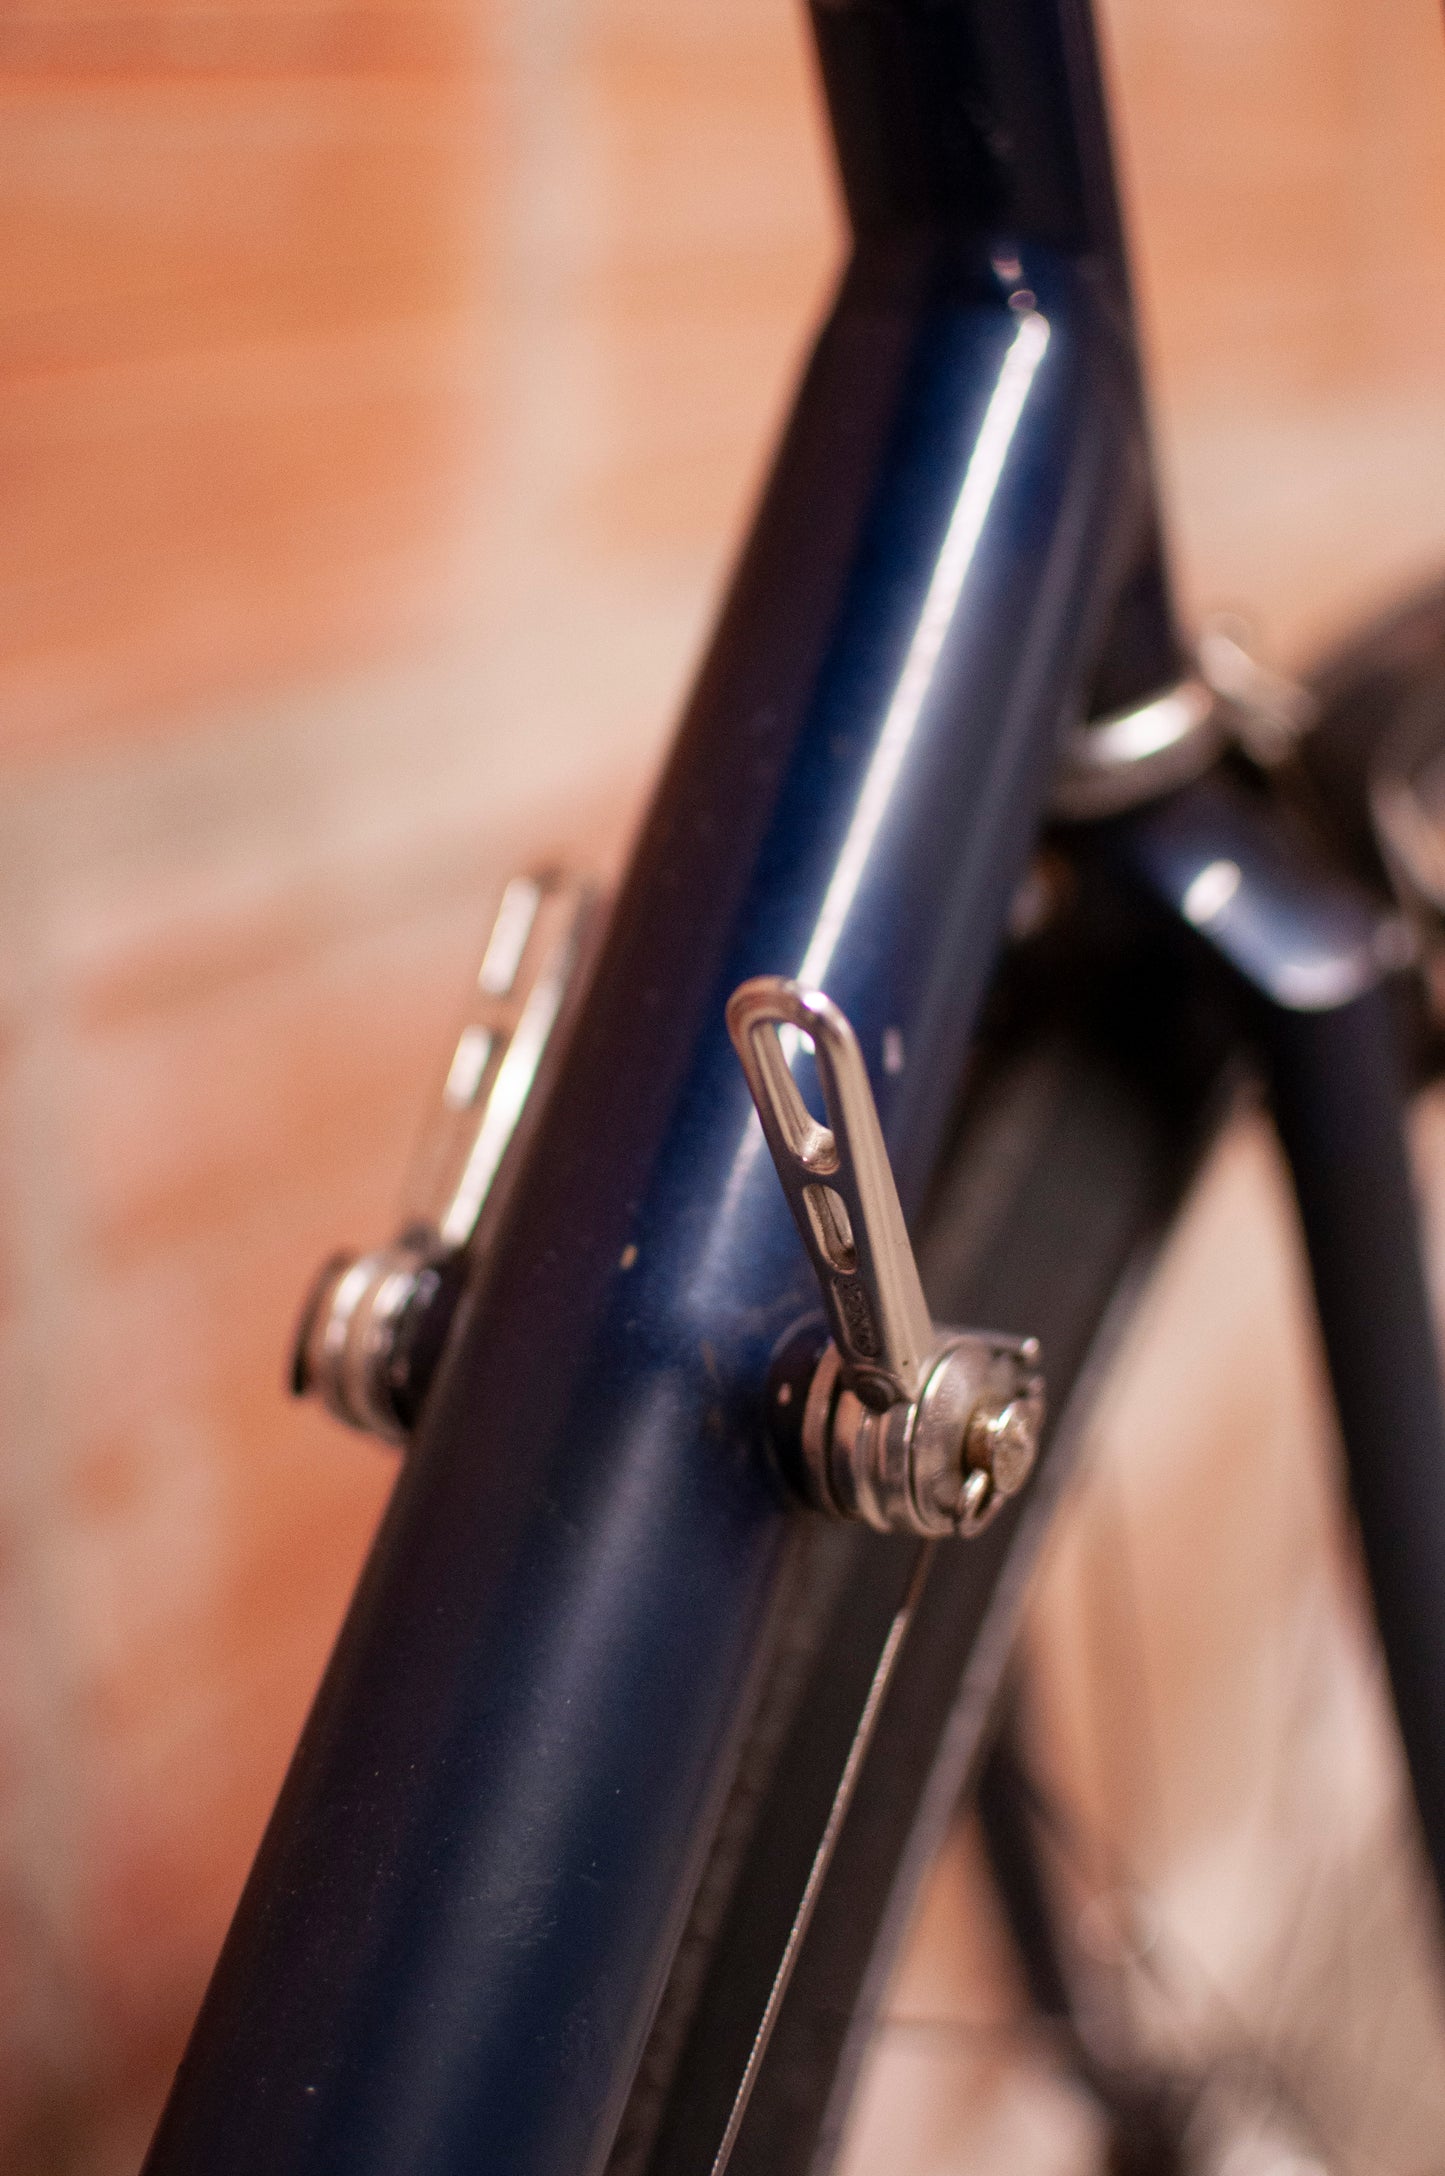 Cannondale aluminum commuter bike, navy blue, 58cm/Large